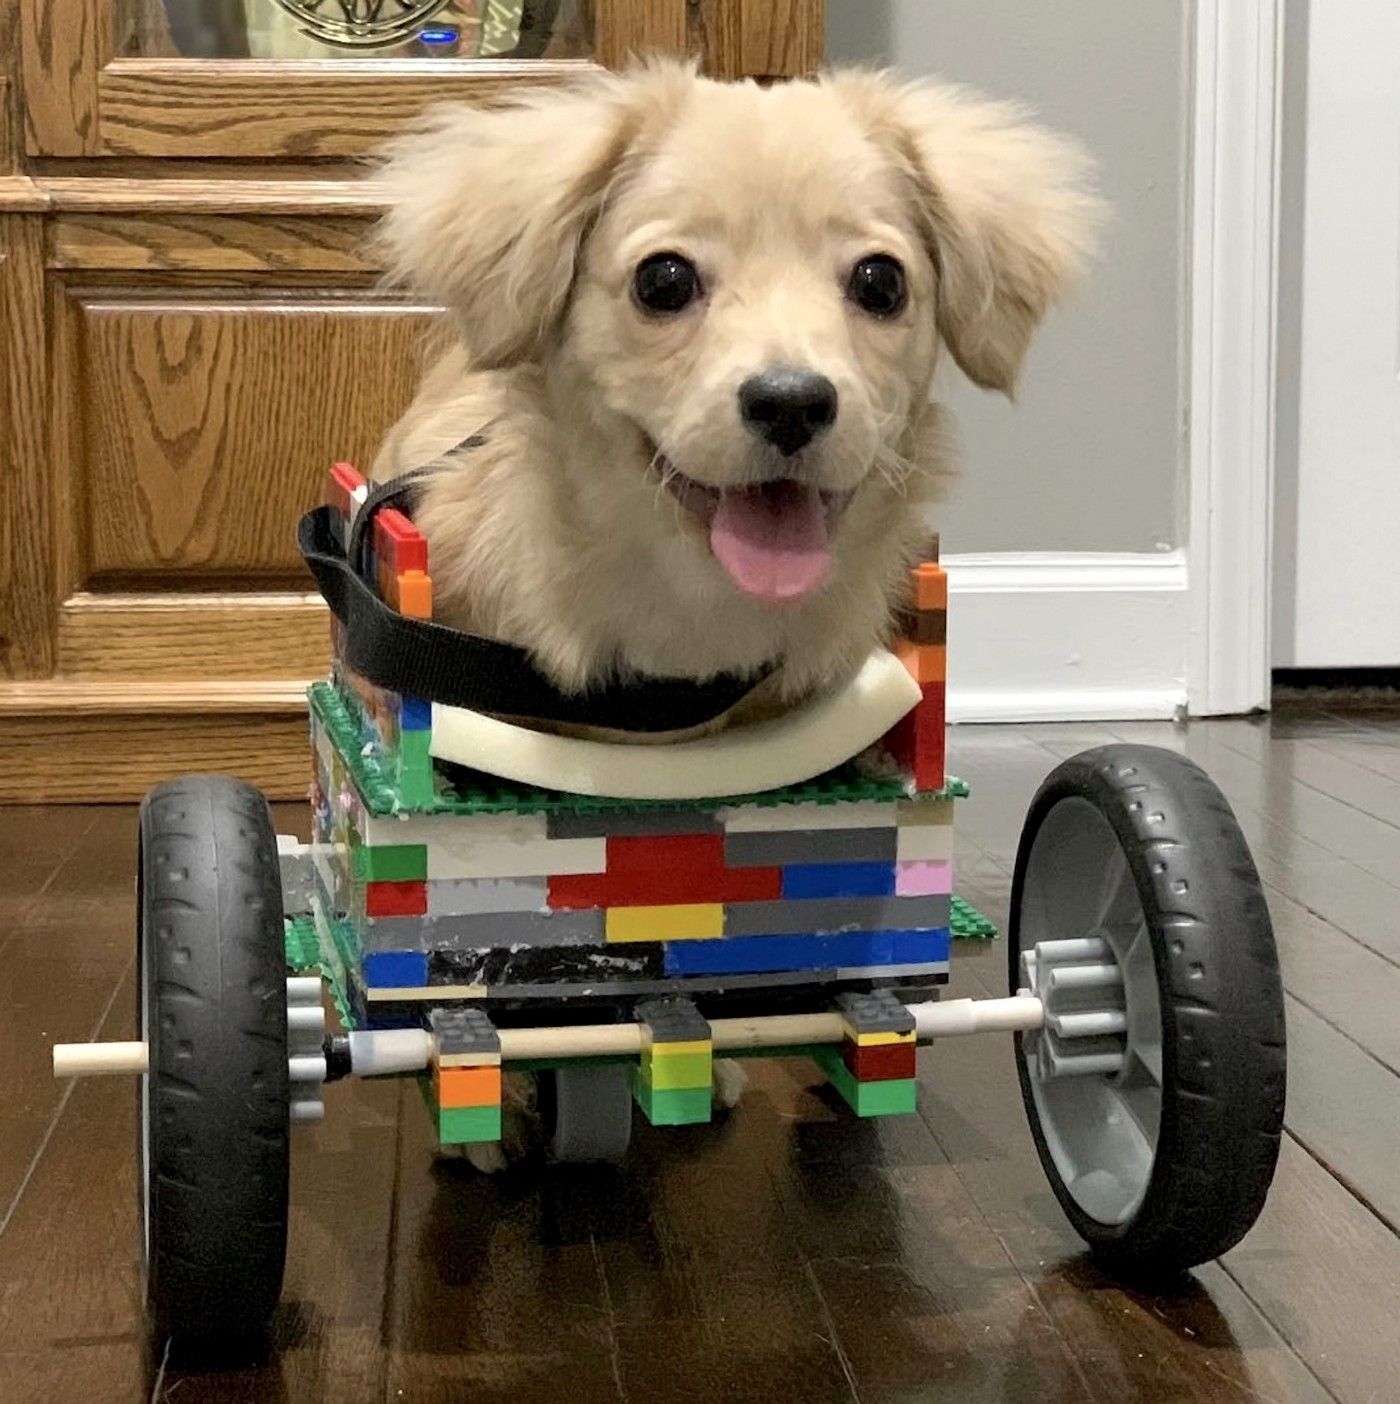 Perrita con la silla de ruedas de lego